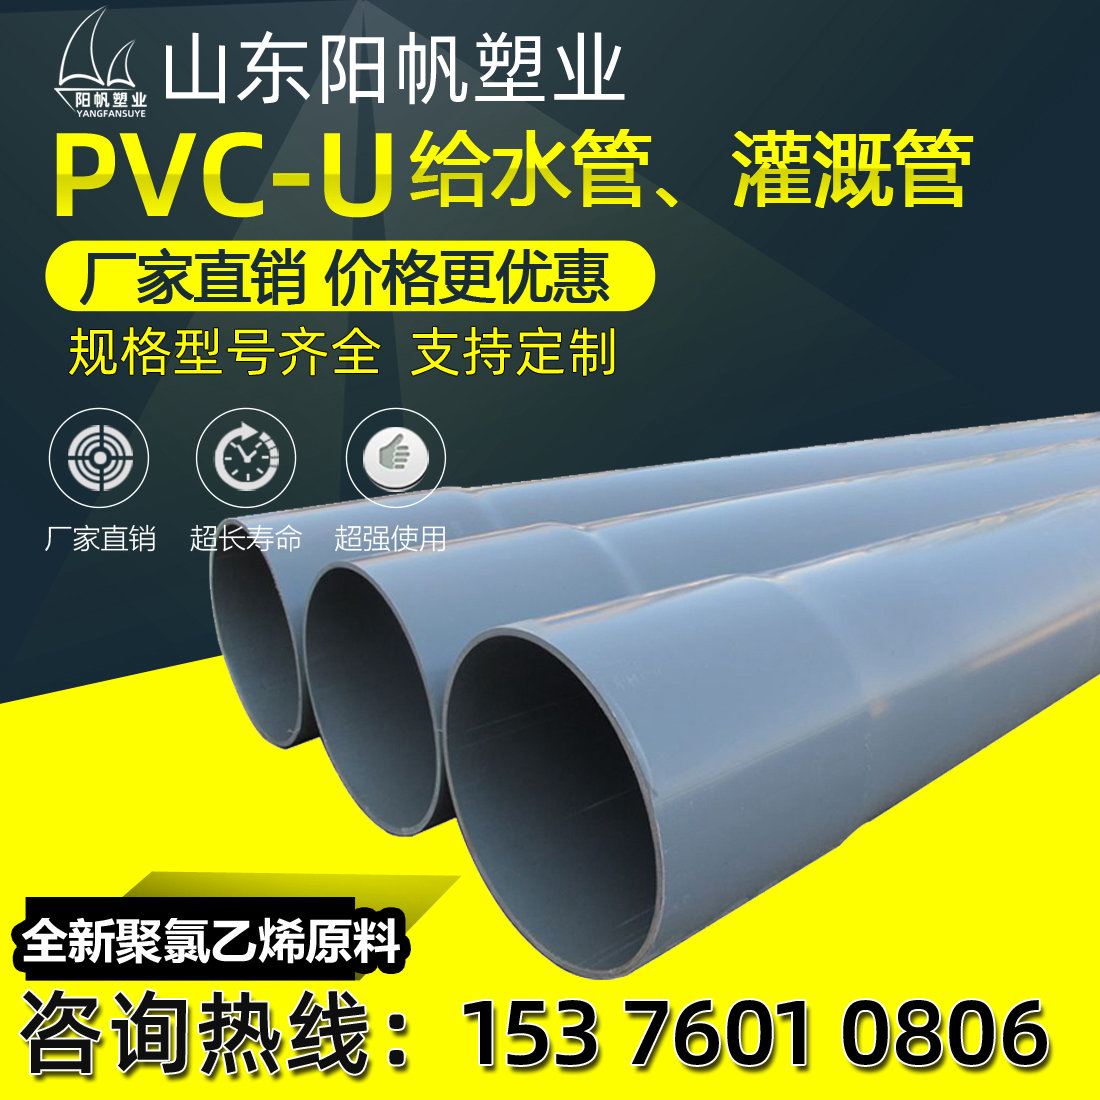 PVC管upvc给水管排水管生产加工定制各种口径灰色蓝色白色均可做